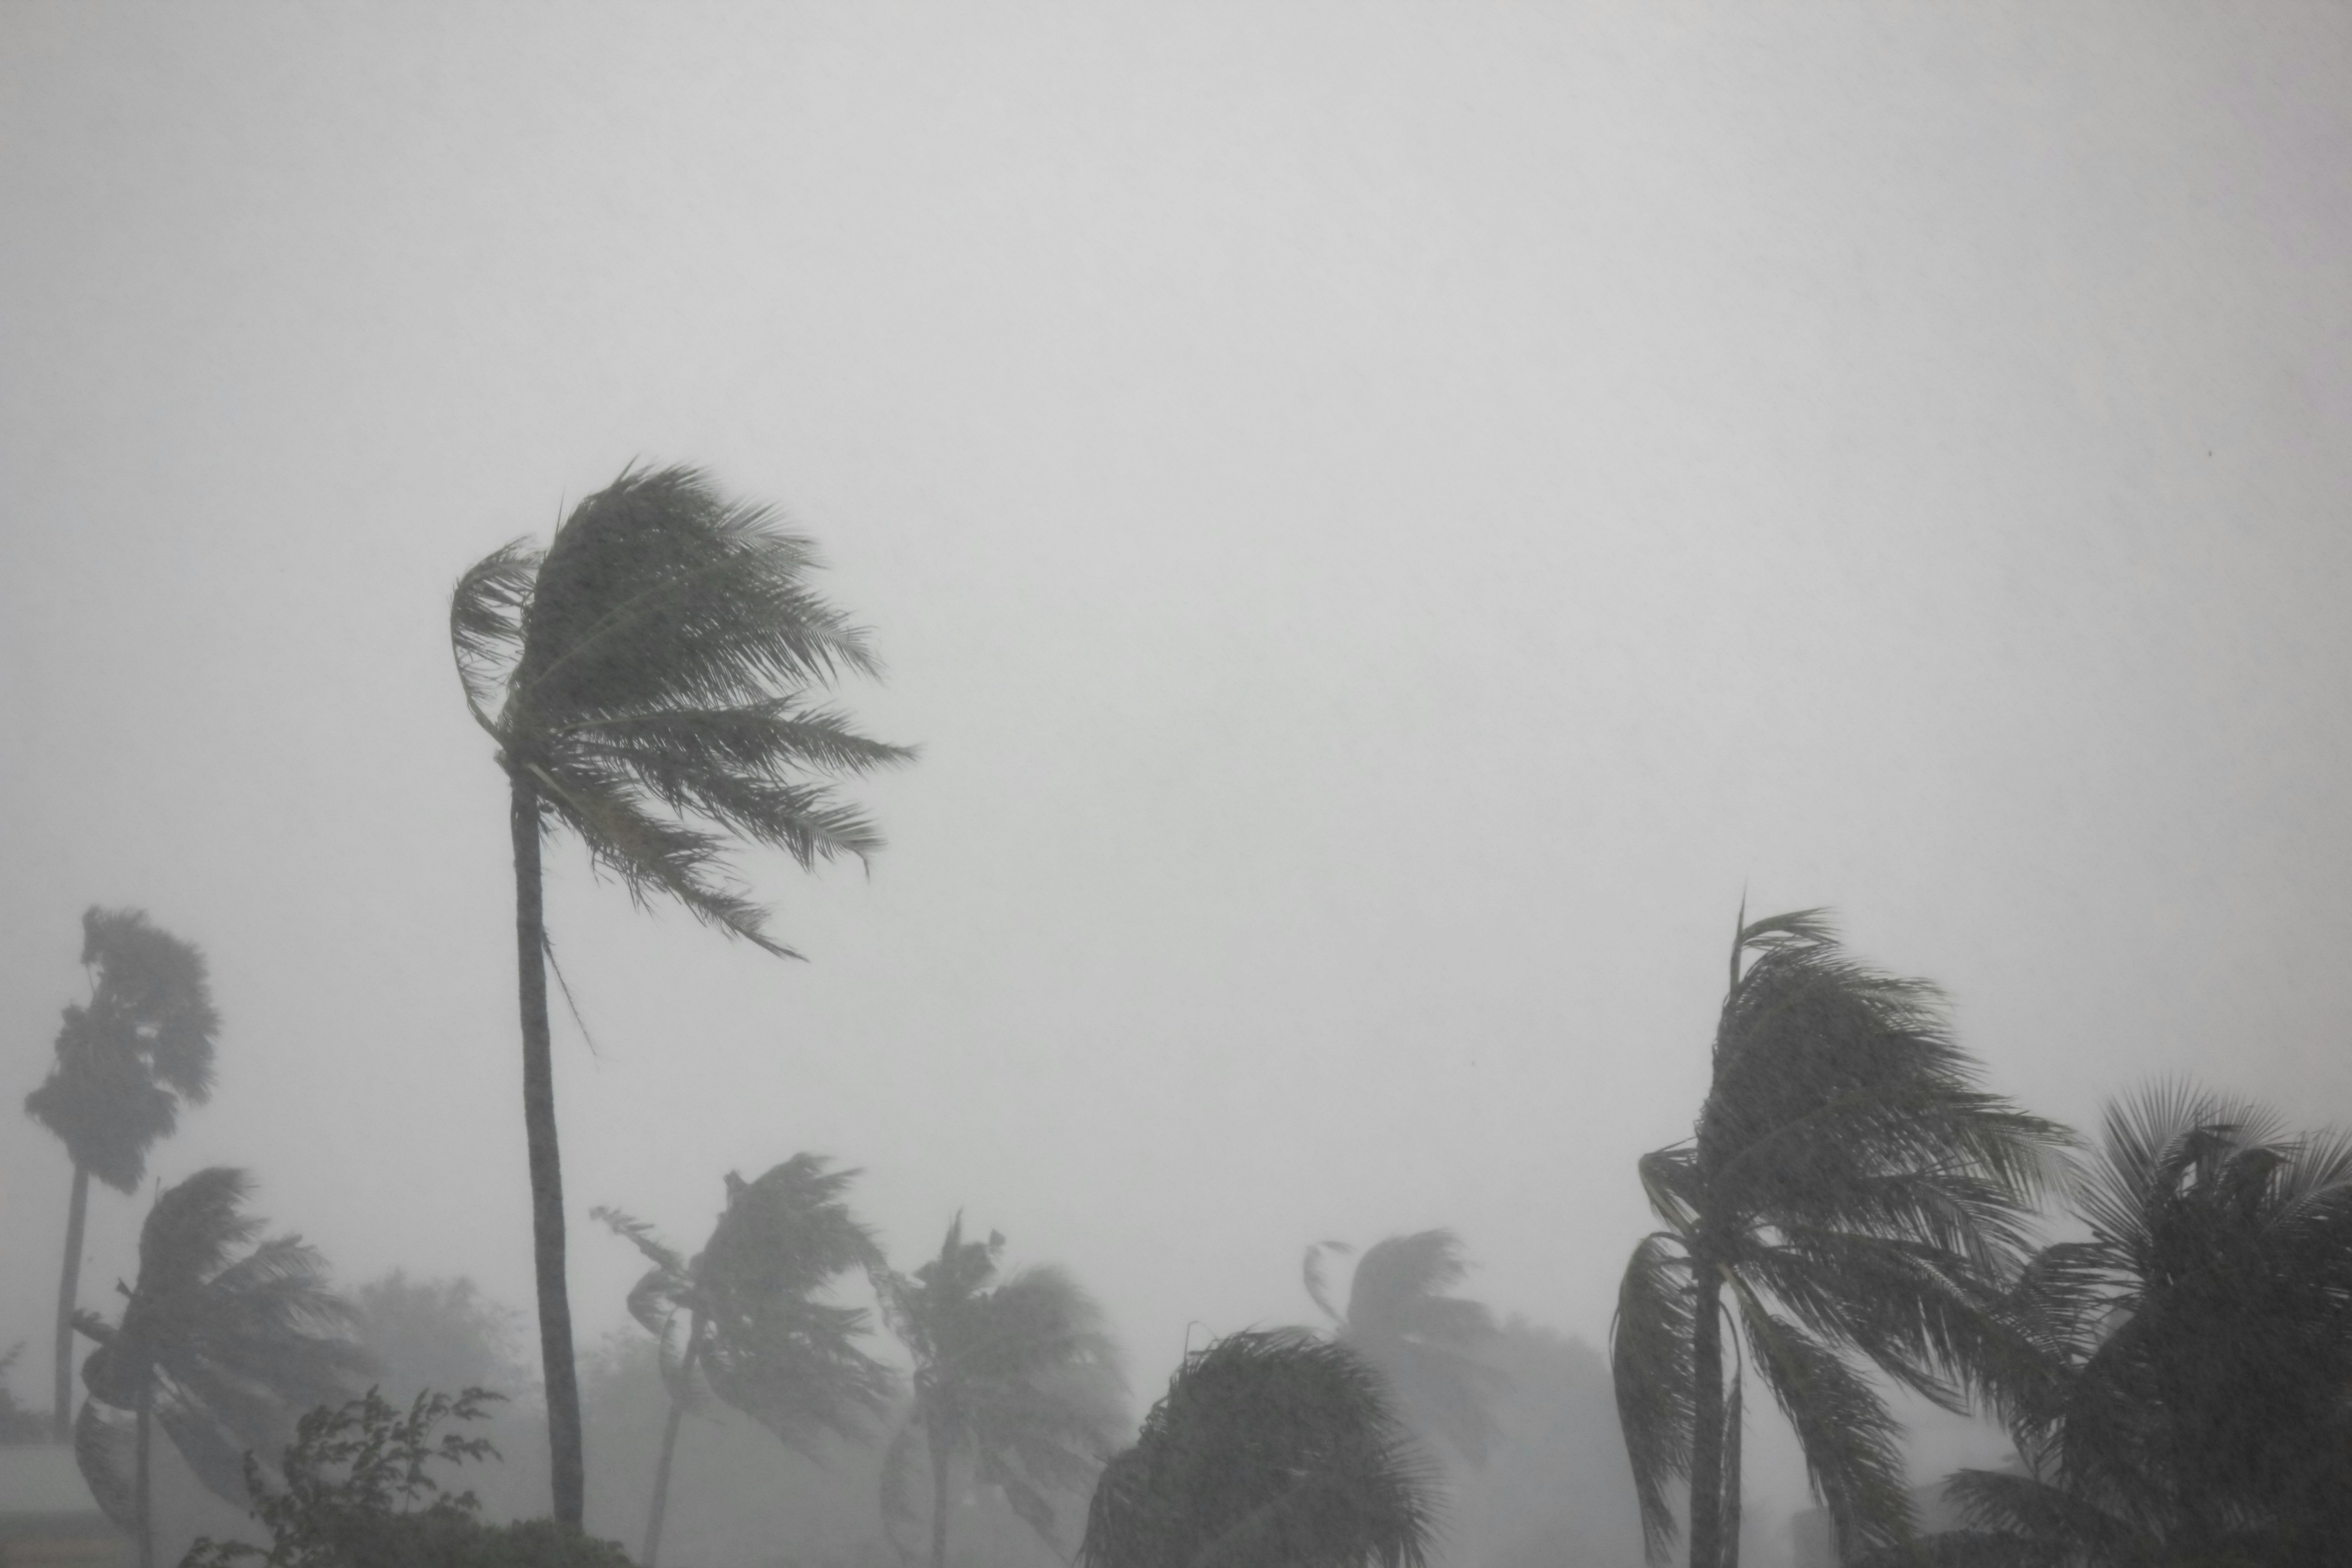 Palmen, die von den starken Winden und dem Sturm eines herannahenden Tornados verbogen wurden